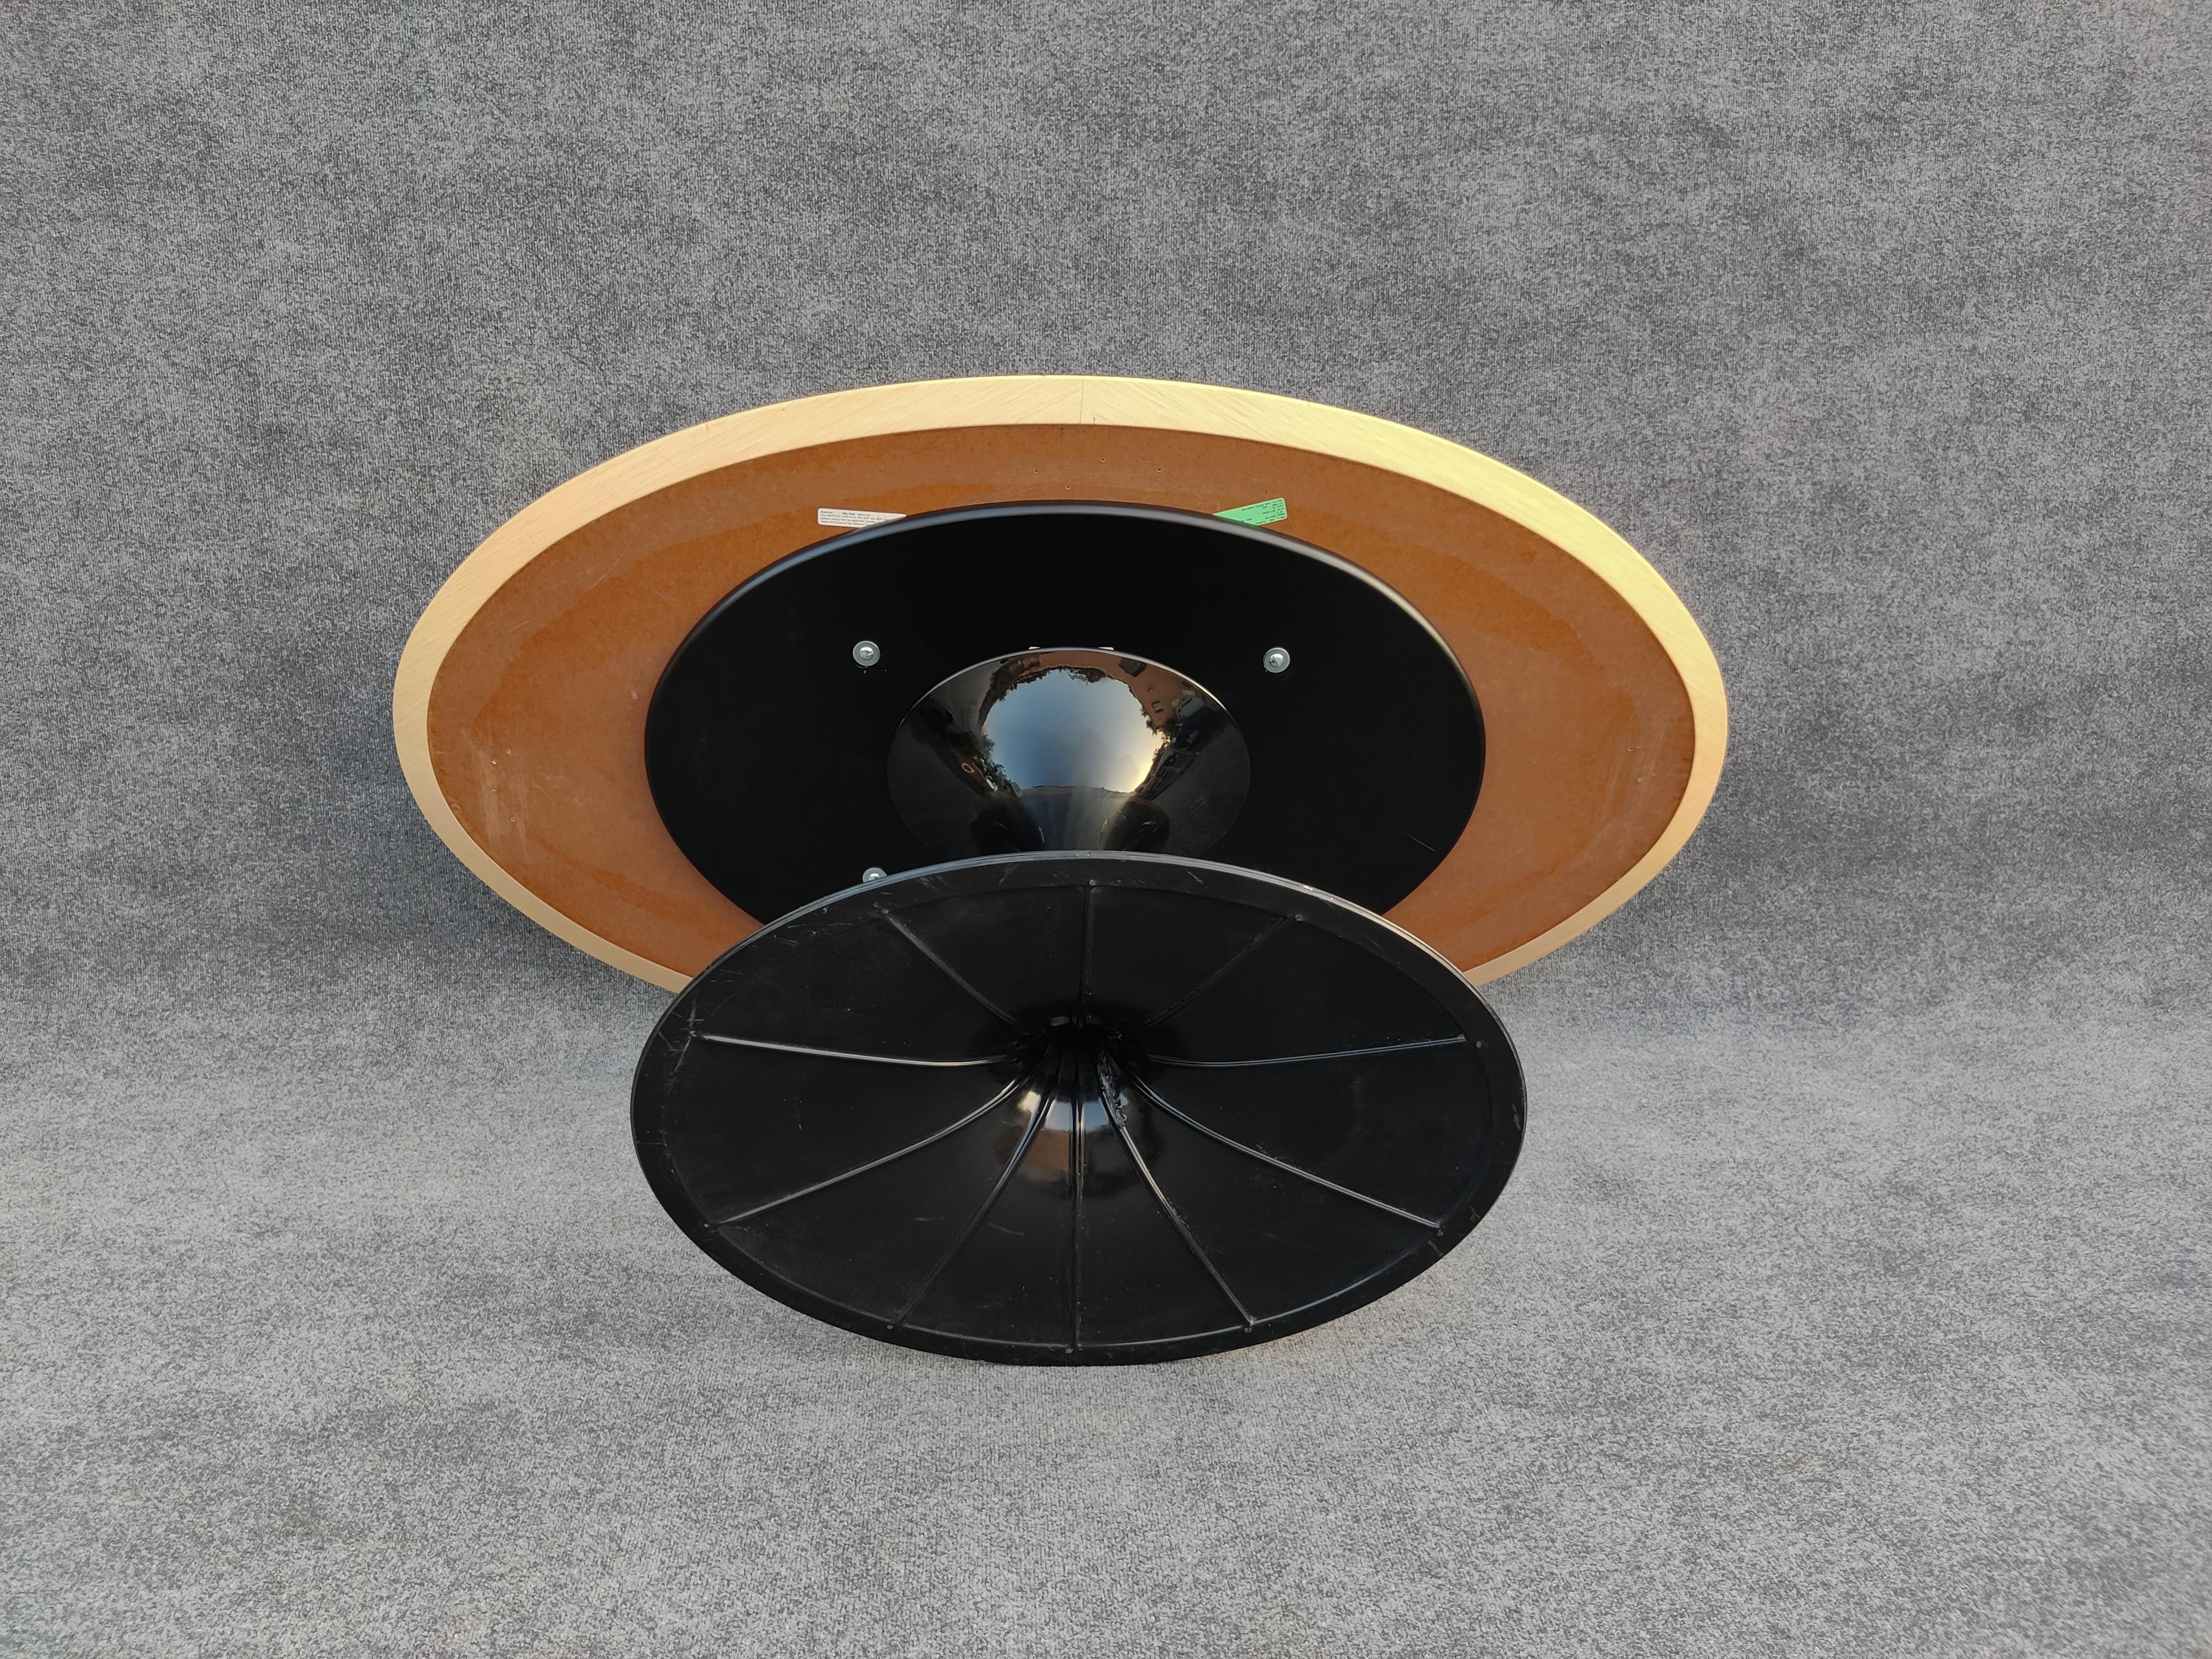 Eero Saarinen Knoll Oval Tulip Dining Table 66x38